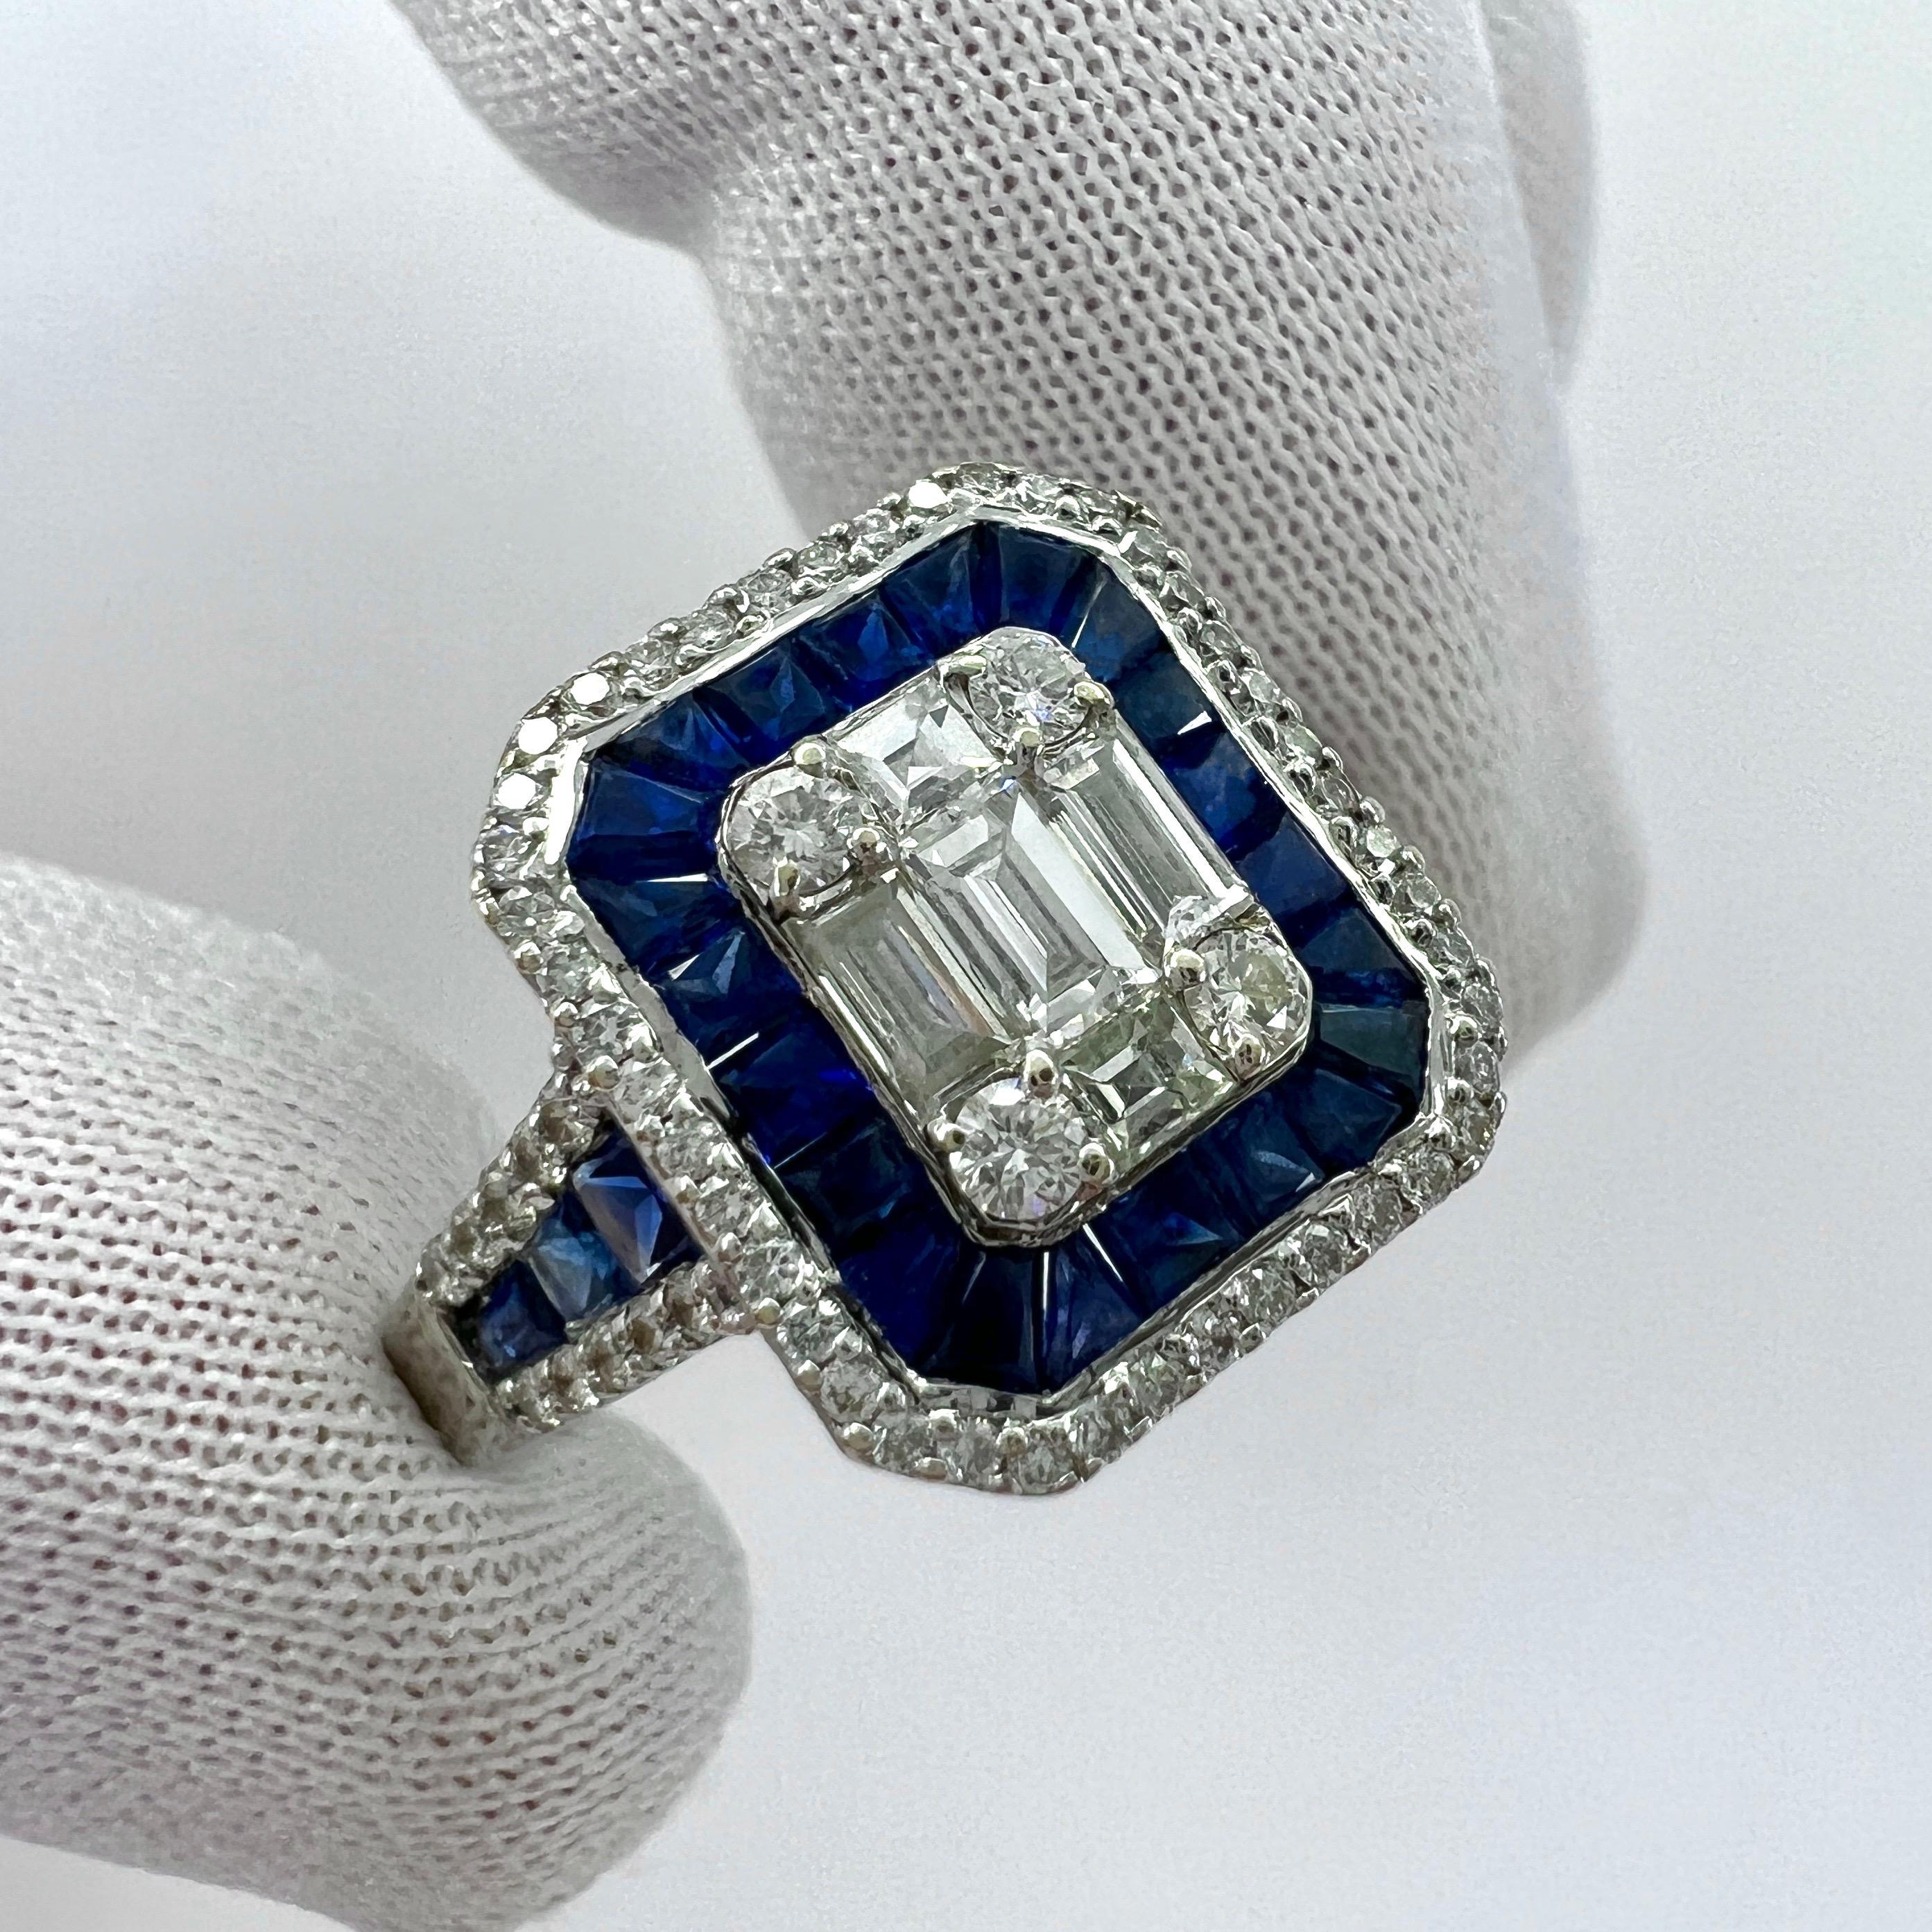 Baguette Cut 2 Carat Blue Sapphire Diamond Calibre Cut 18k White Gold Art Deco Cocktail Ring For Sale